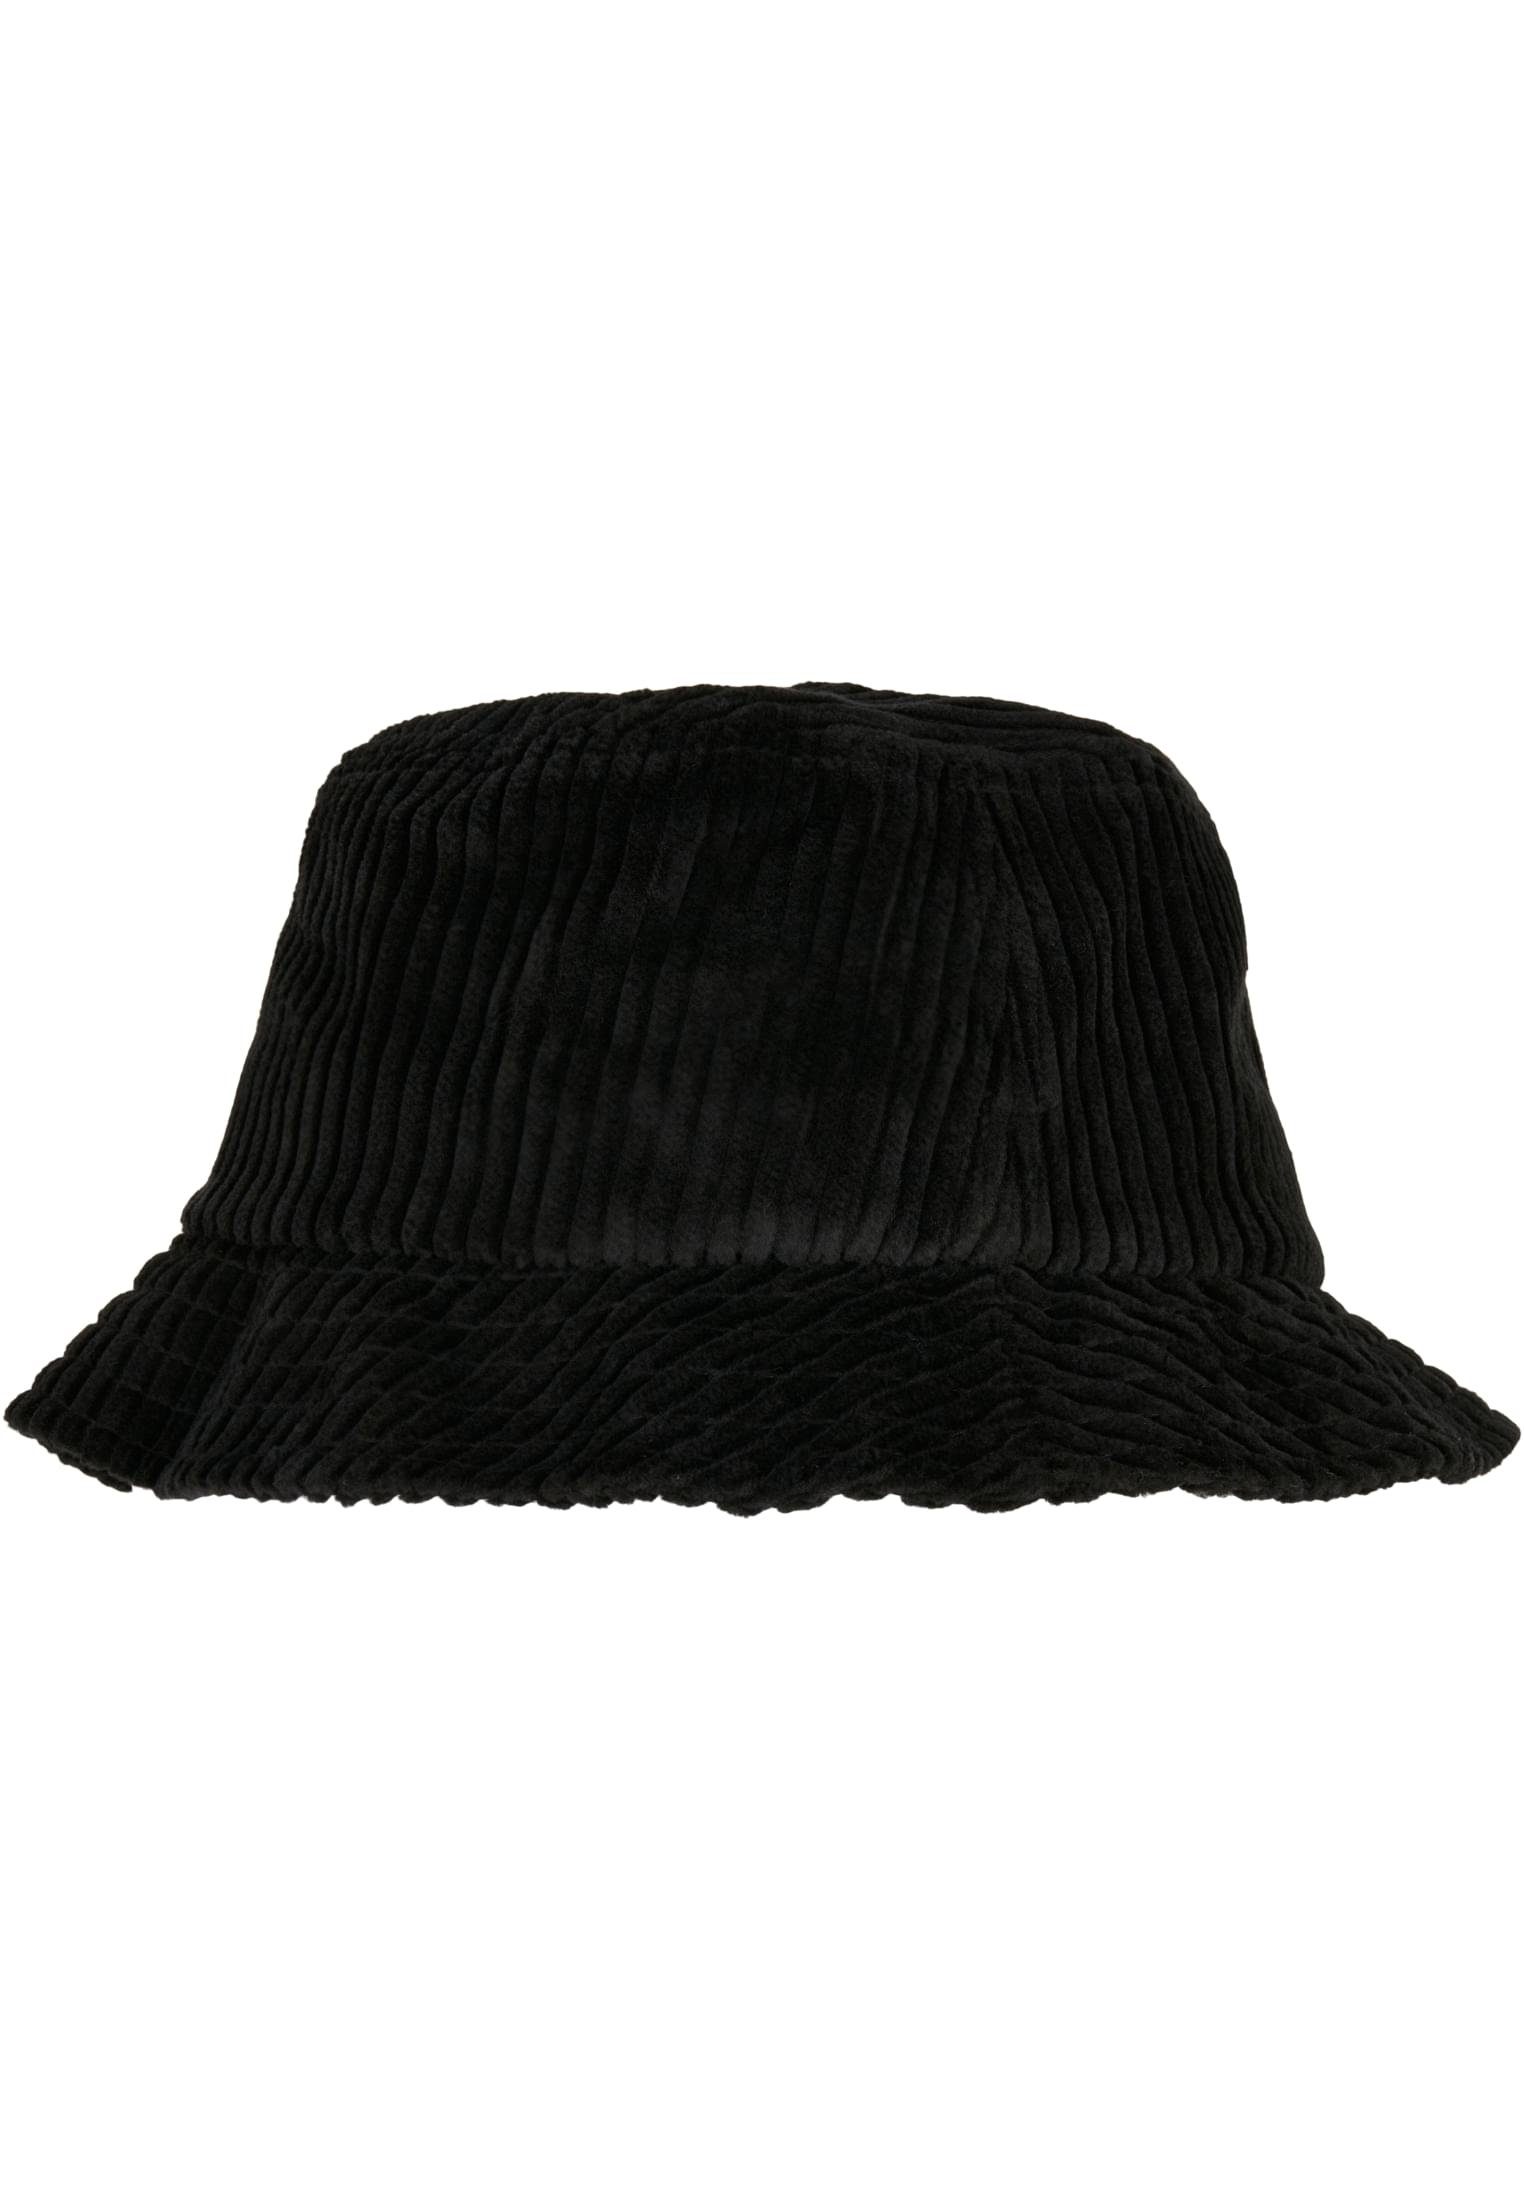 Accessoires Hat Flex black Bucket Corduroy Big Flexfit Cap